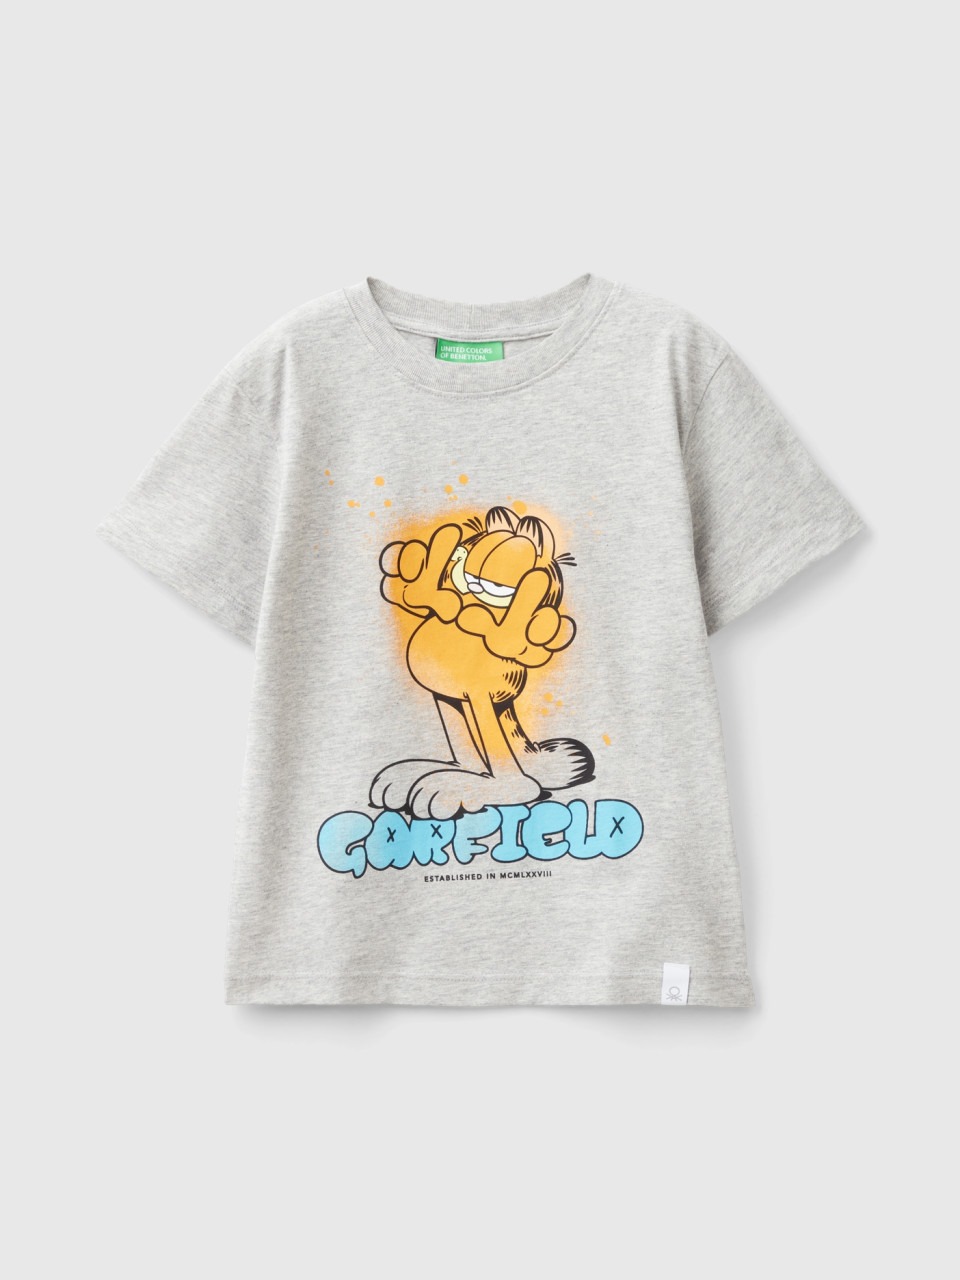 Benetton, Camiseta Garfield ©2024 By Paws, size 3-4, Gris Claro